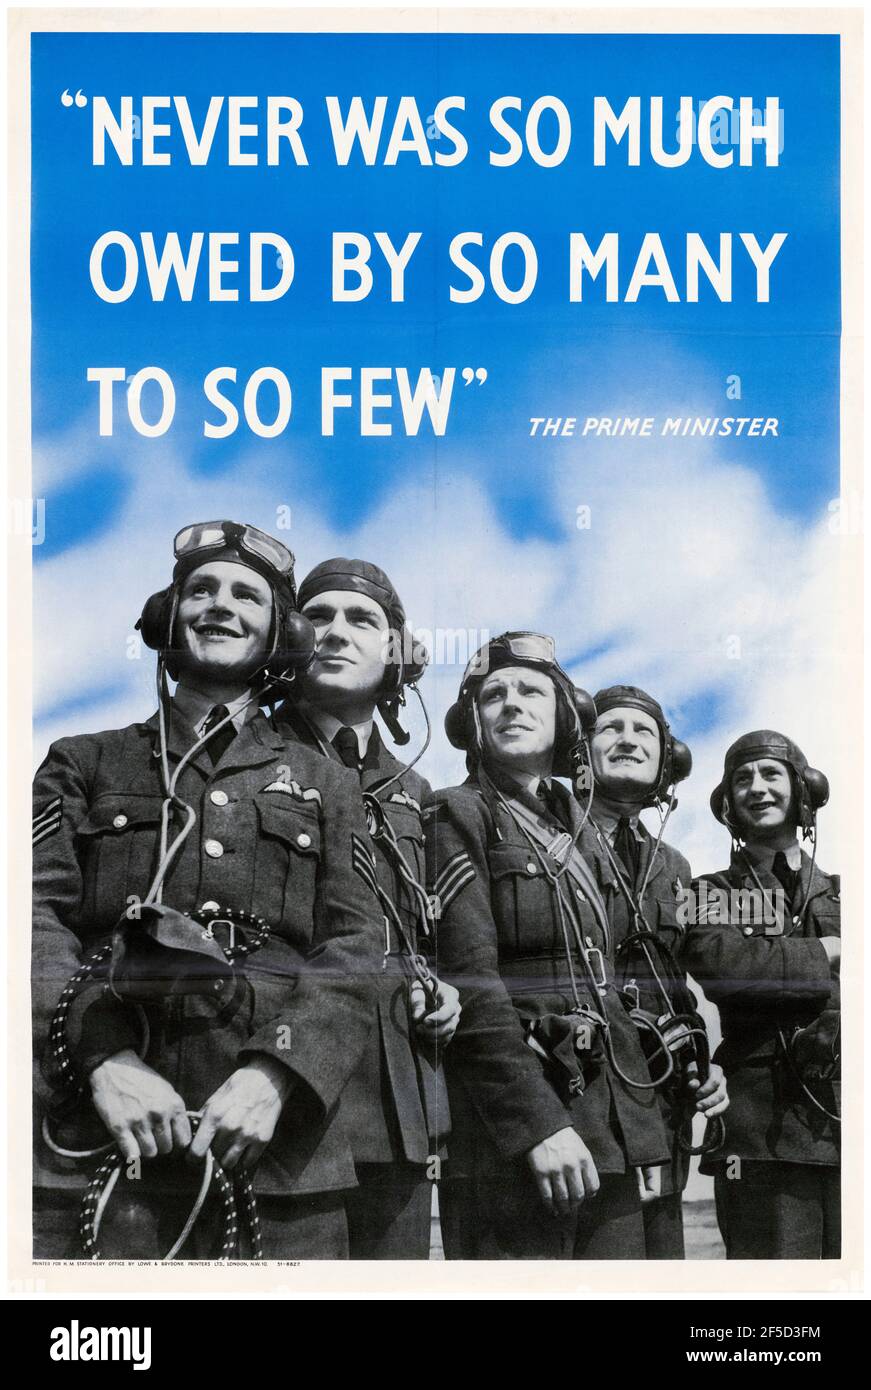 Winston Churchill quote, Battle of Britain, poster motivazionale della seconda guerra mondiale, mai così tanto dovuto da tanti, a così pochi, (con piloti combattenti), 1942-1945 Foto Stock